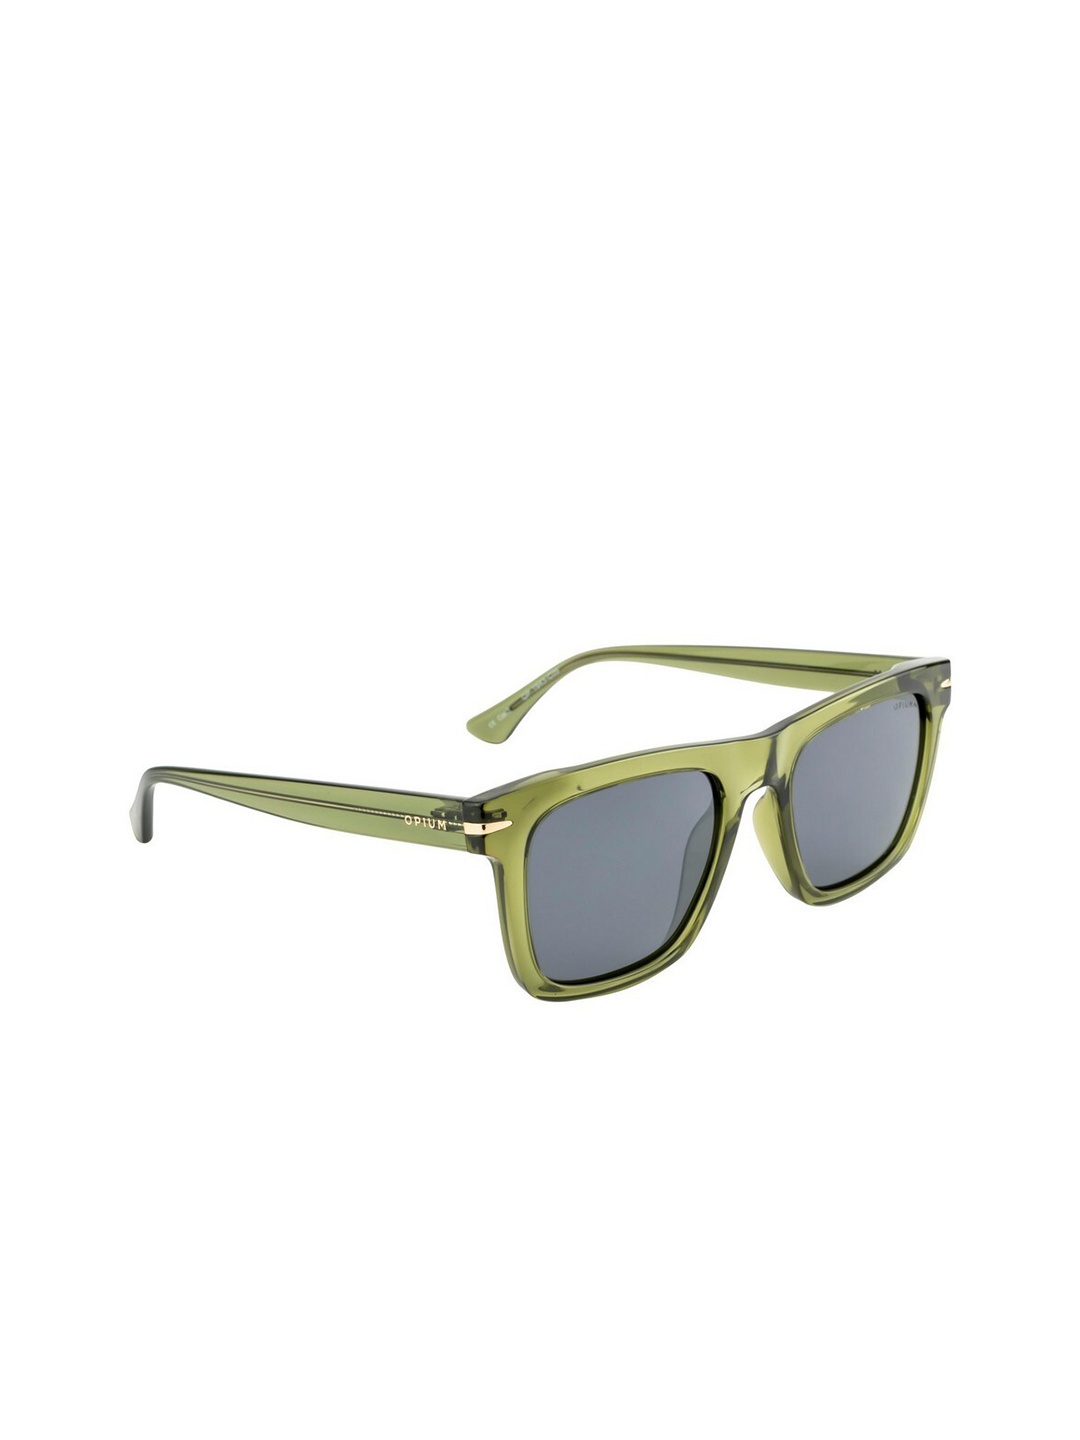 

OPIUM Men Grey Lens & Green Wayfarer Sunglasses with UV Protected Lens OP-1943-C05